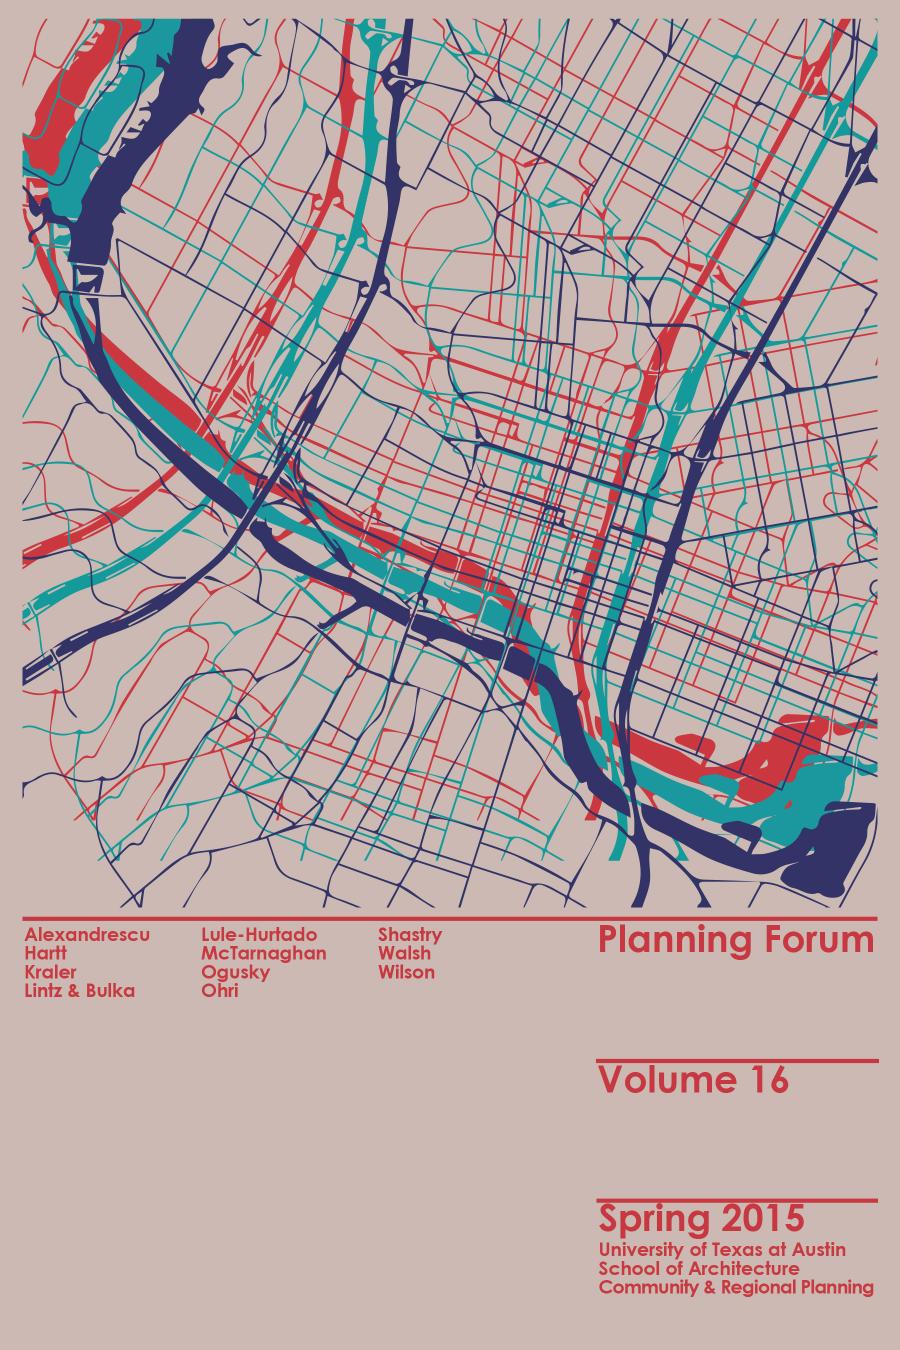 Planning Forum Volume 16